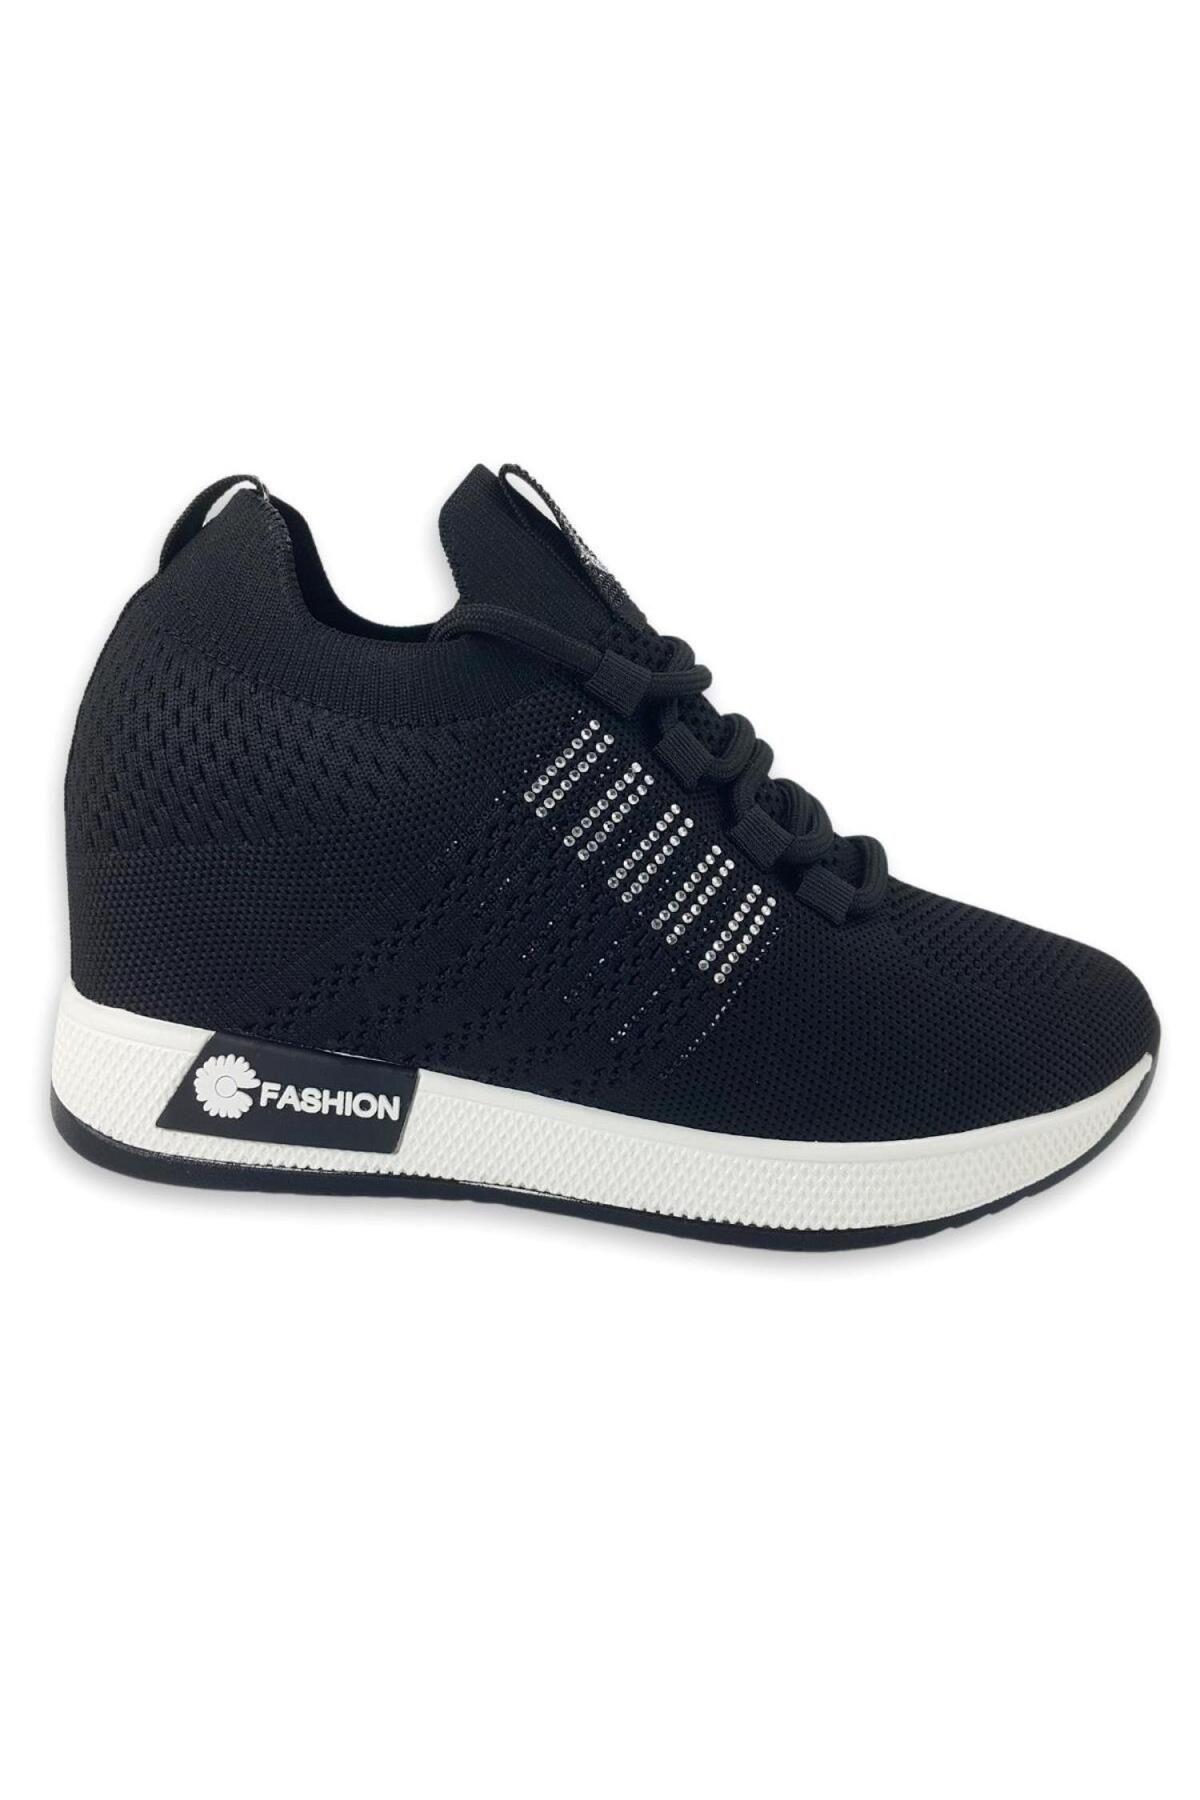 Guja 24y326-1 Kadın Sneaker Ayakkabı